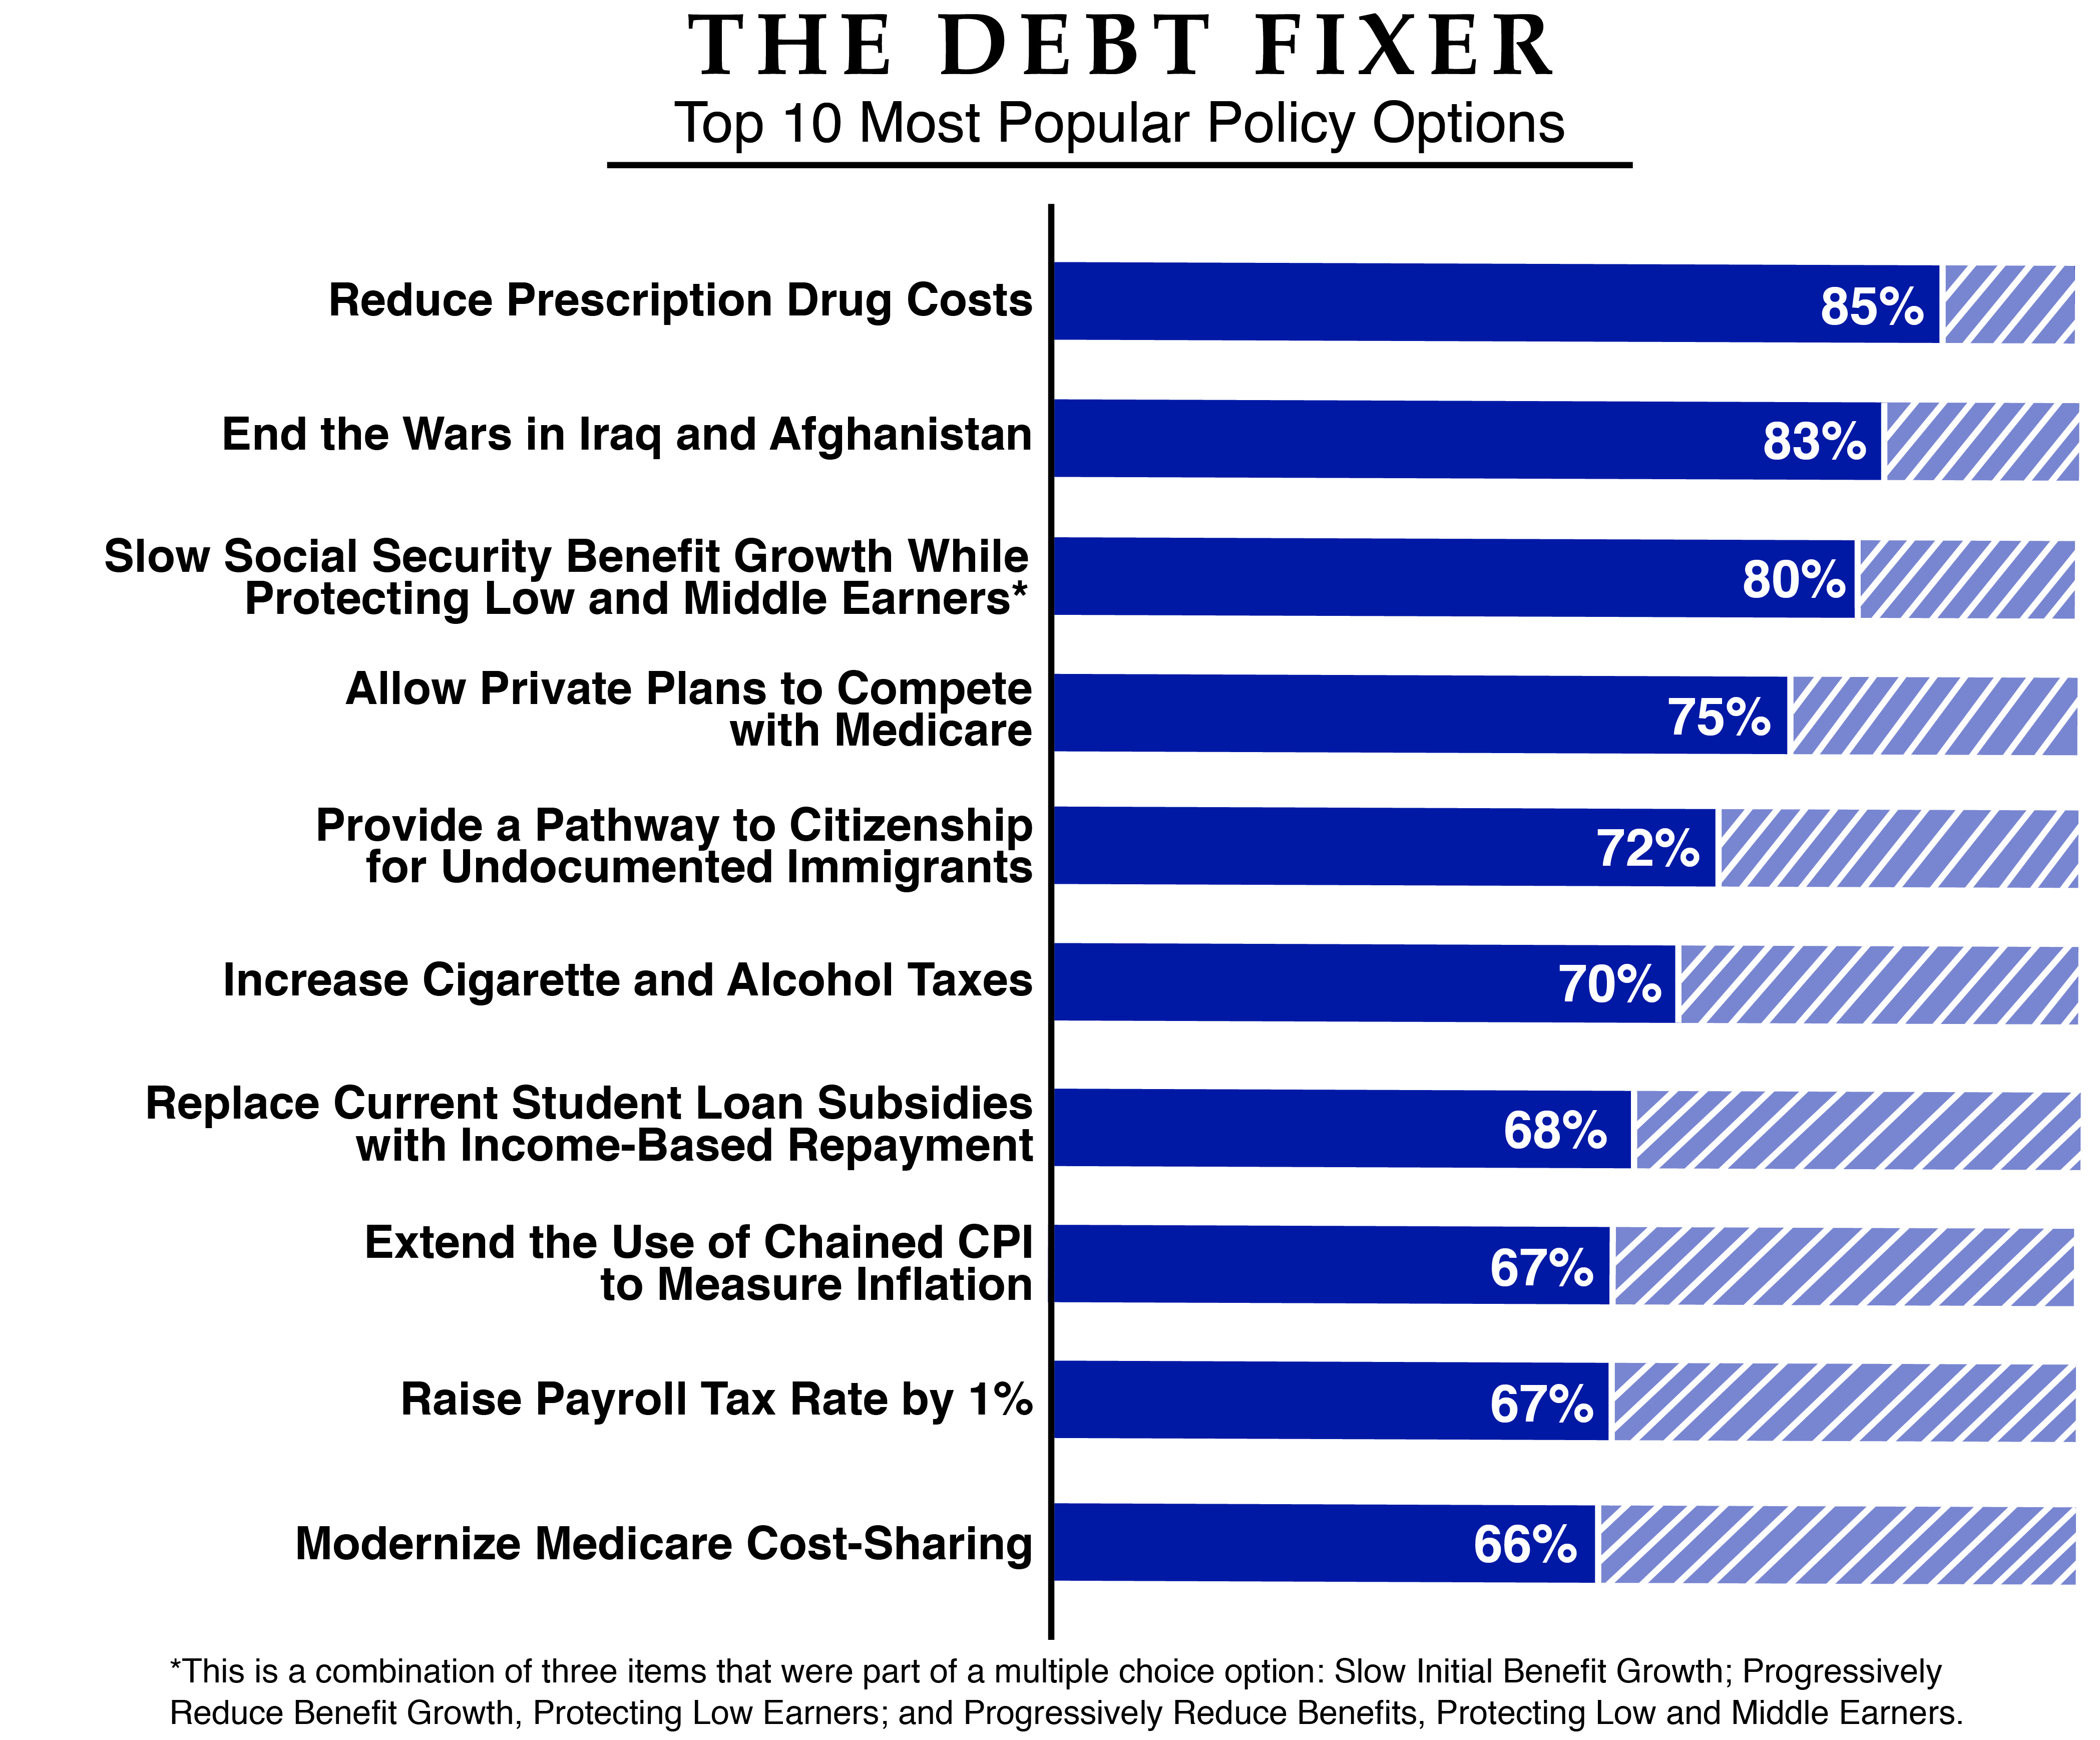 CRFB Debt Fixer most popular options